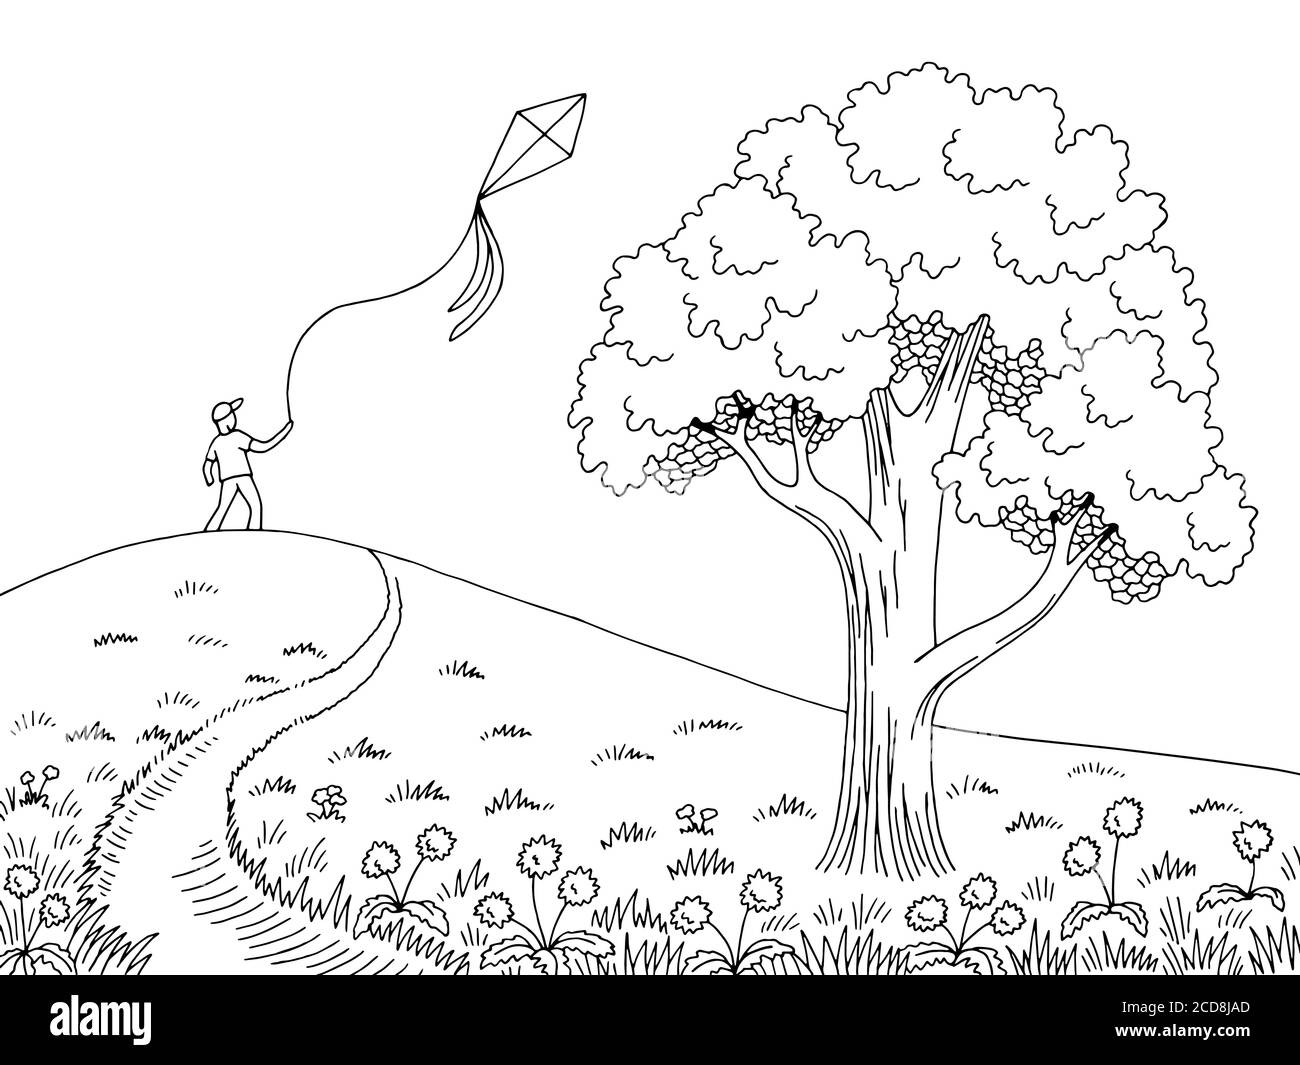 Junge spielen mit Drachen Grafik schwarz weiß Straßenbaum Landschaft Vektor der Skizzendarstellung Stock Vektor